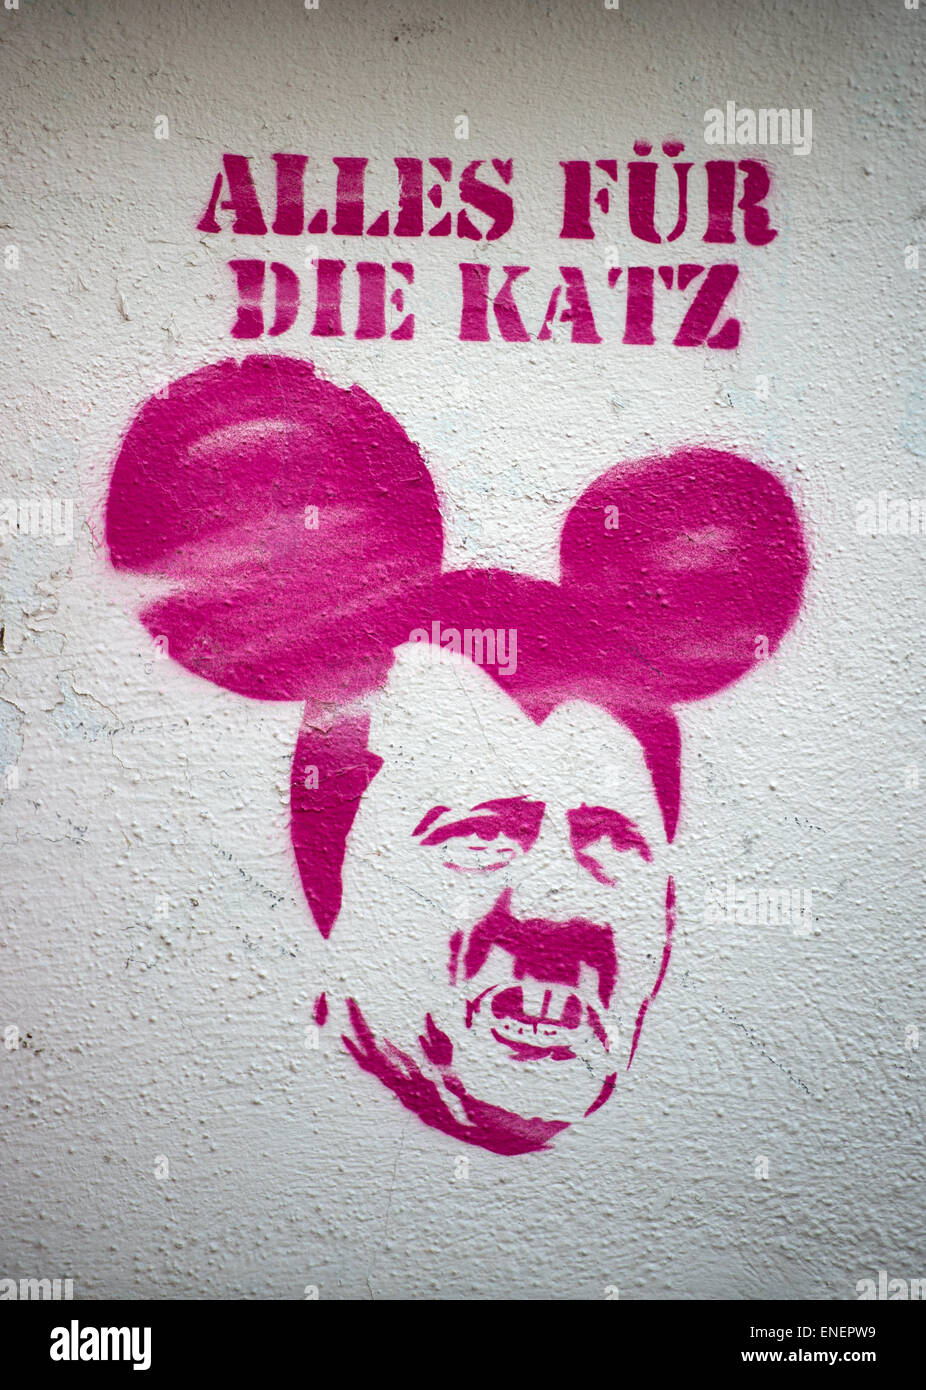 Dresde, Allemagne. 04 mai, 2015. Un graffiti rose représentant Adolf Hitler avec les oreilles de Mickey sous les termes "Alles für die Katz' (lit. tous pour le chat, un Allemand en disant ce qui se traduit par "c'était une perte de temps') est vu à Dresde, Allemagne, 04 mai 2015. Photo : Arno Burgi/dpa/Alamy Live News Banque D'Images